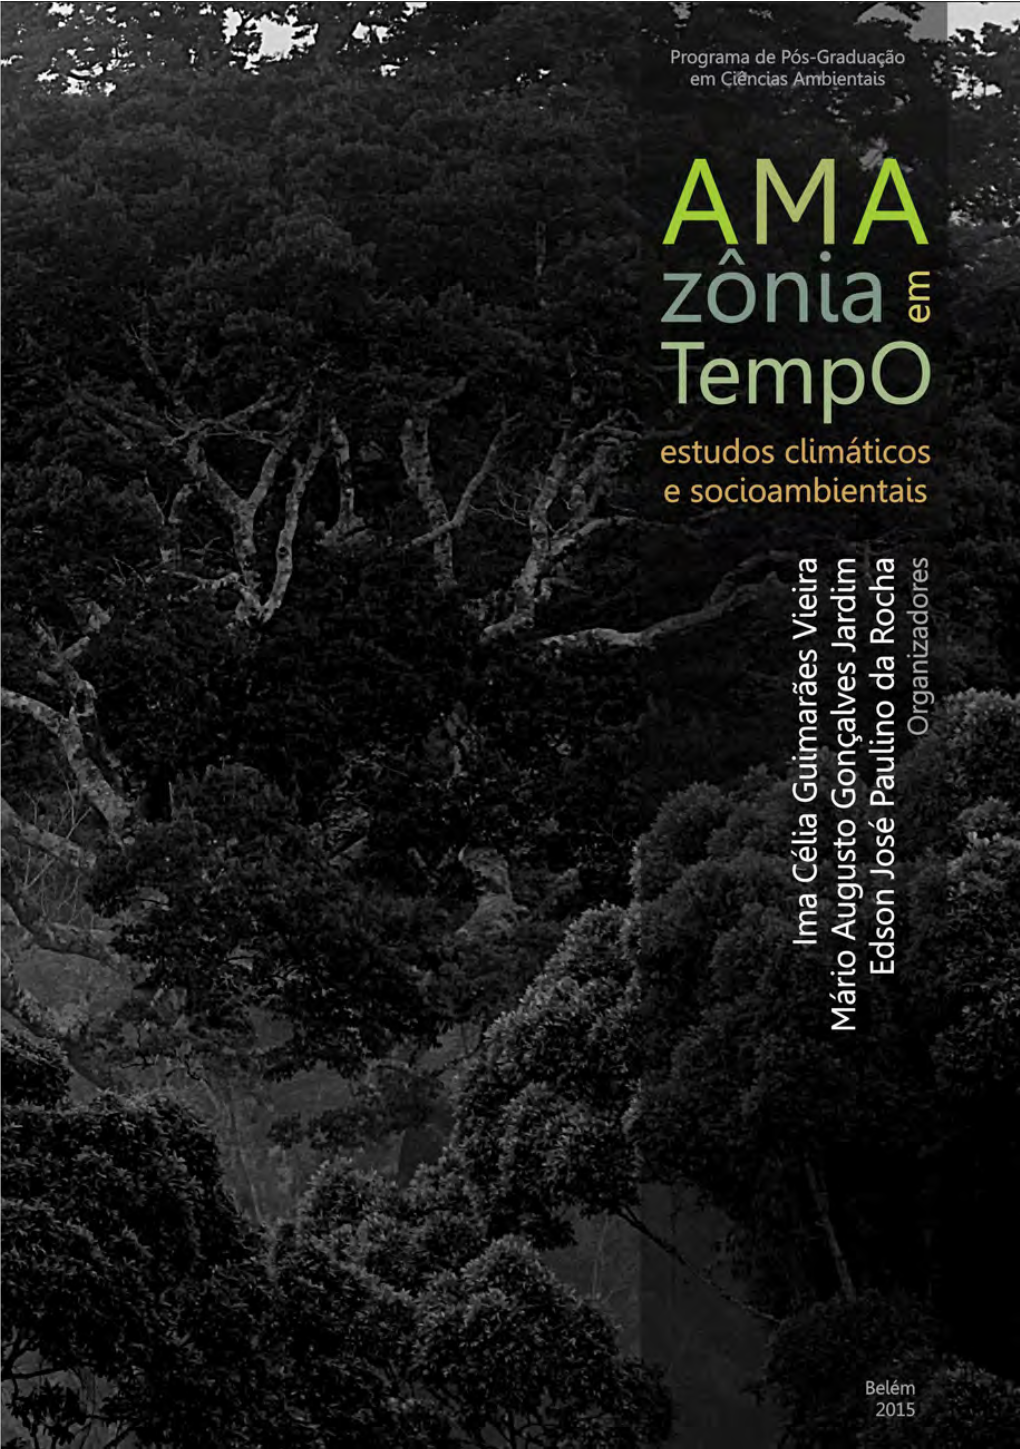 Amazonia EM TEMPO.Pmd